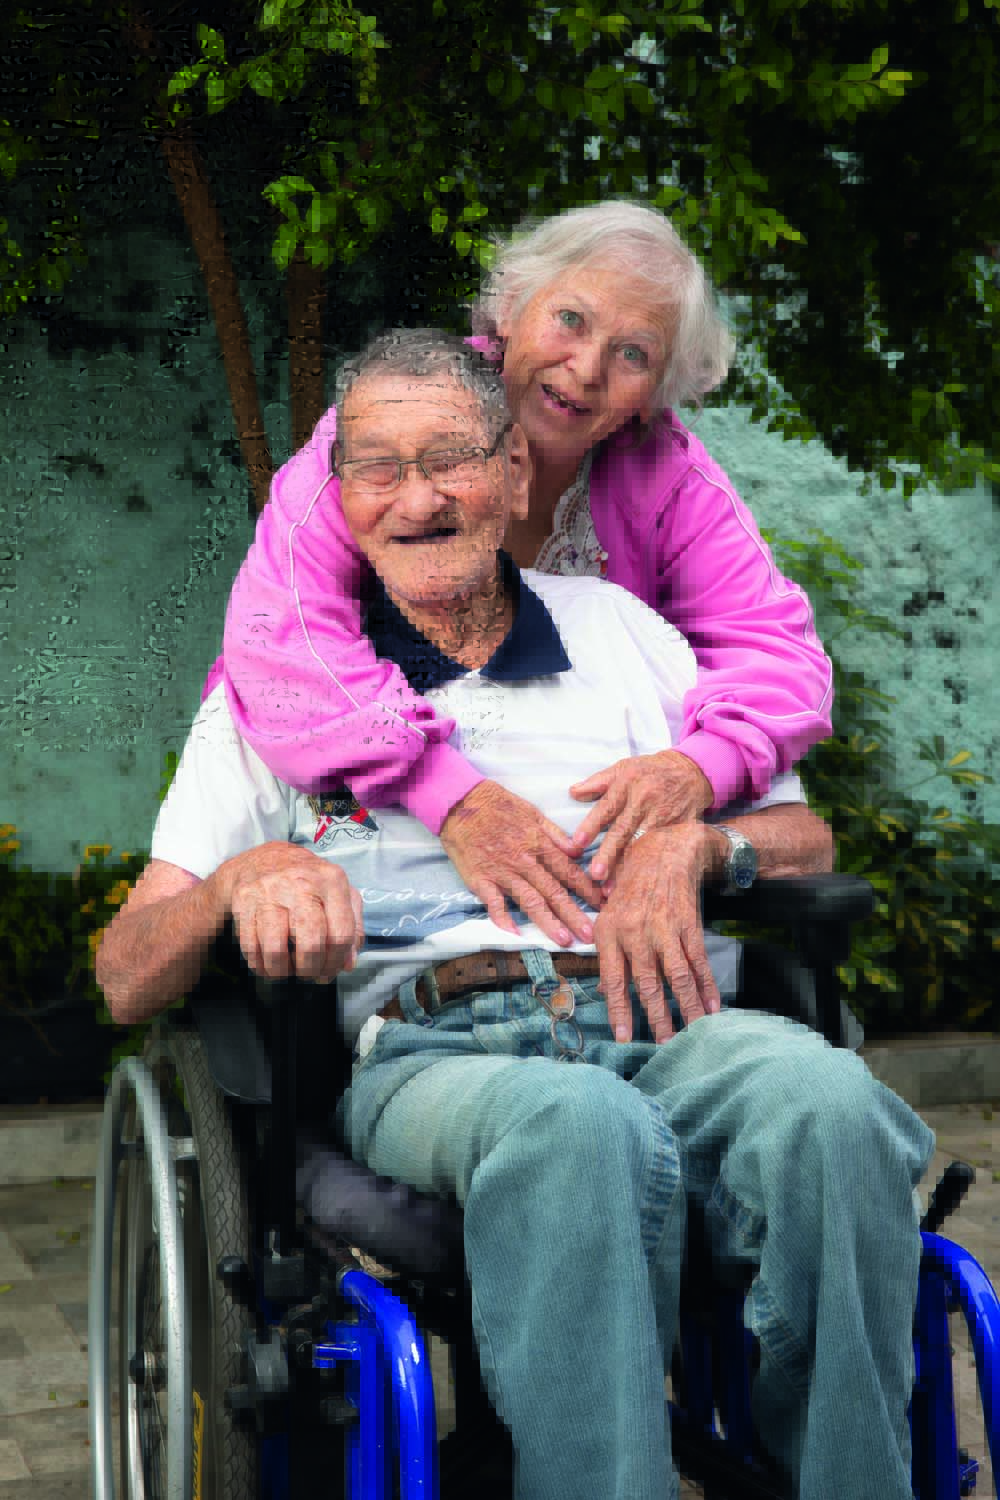 Um senhor japonês está sentado em uma cadeira de rodas ao lado de sua namorada, uma senhora de cabelos brancos e olhos azuis que se apoia na cadeira e encosta o rosto próximo ao seu. Eles estão em um jardim